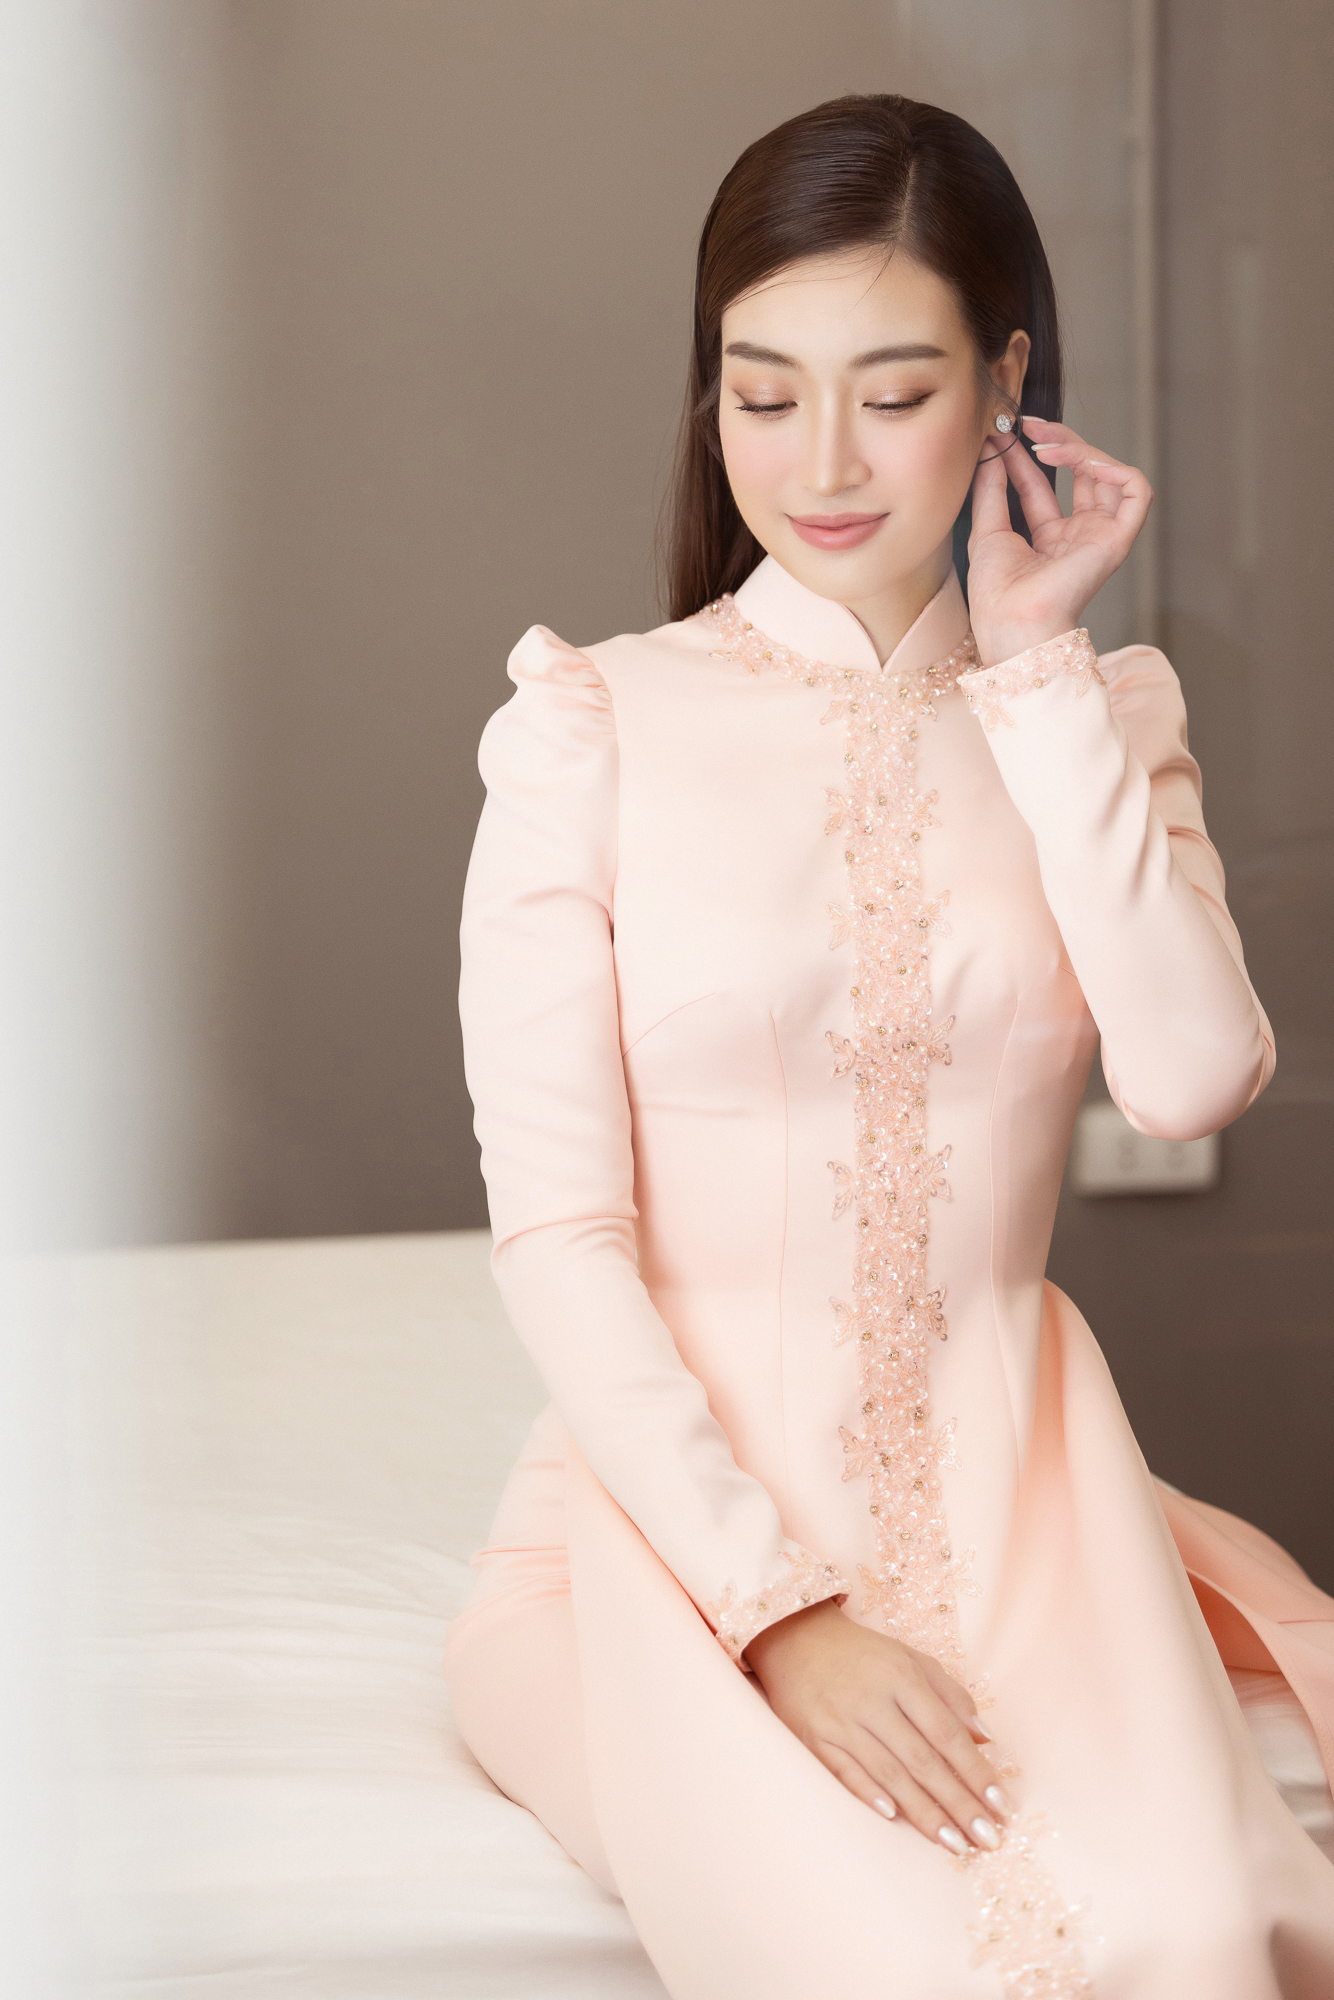 Đỗ Mỹ Linh mặc áo dài xinh đẹp như nàng thơ trong ngày cưới - Ảnh 5.